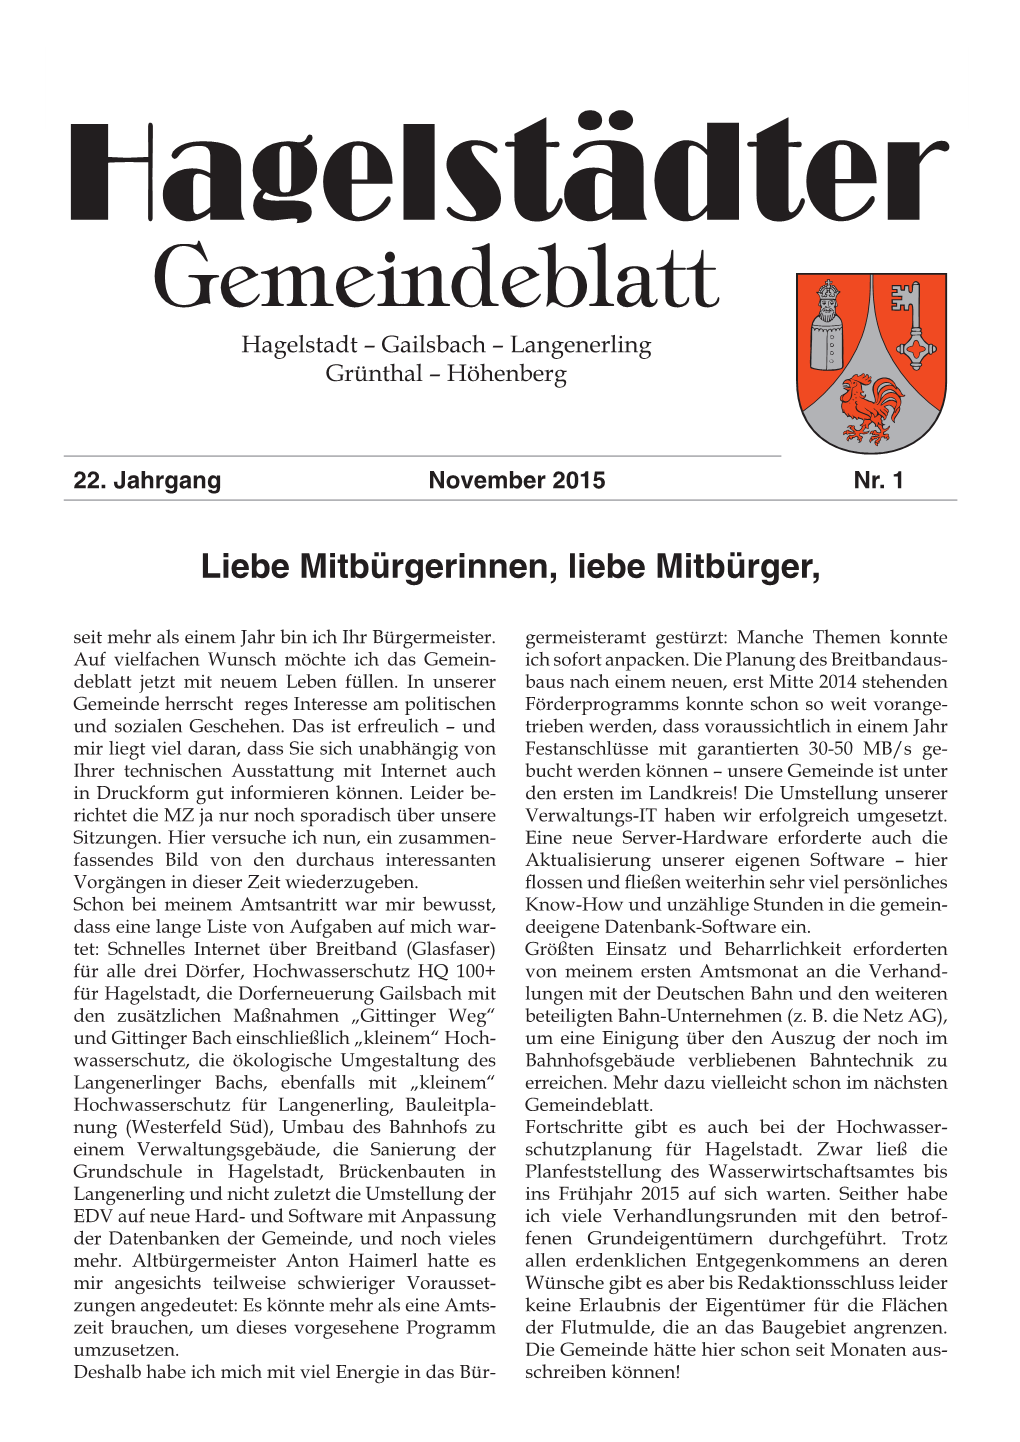 Gemeindeblatt 1 Hagelstädter Gemeindeblatt Hagelstadt – Gailsbach – Langenerling Grünthal – Höhenberg